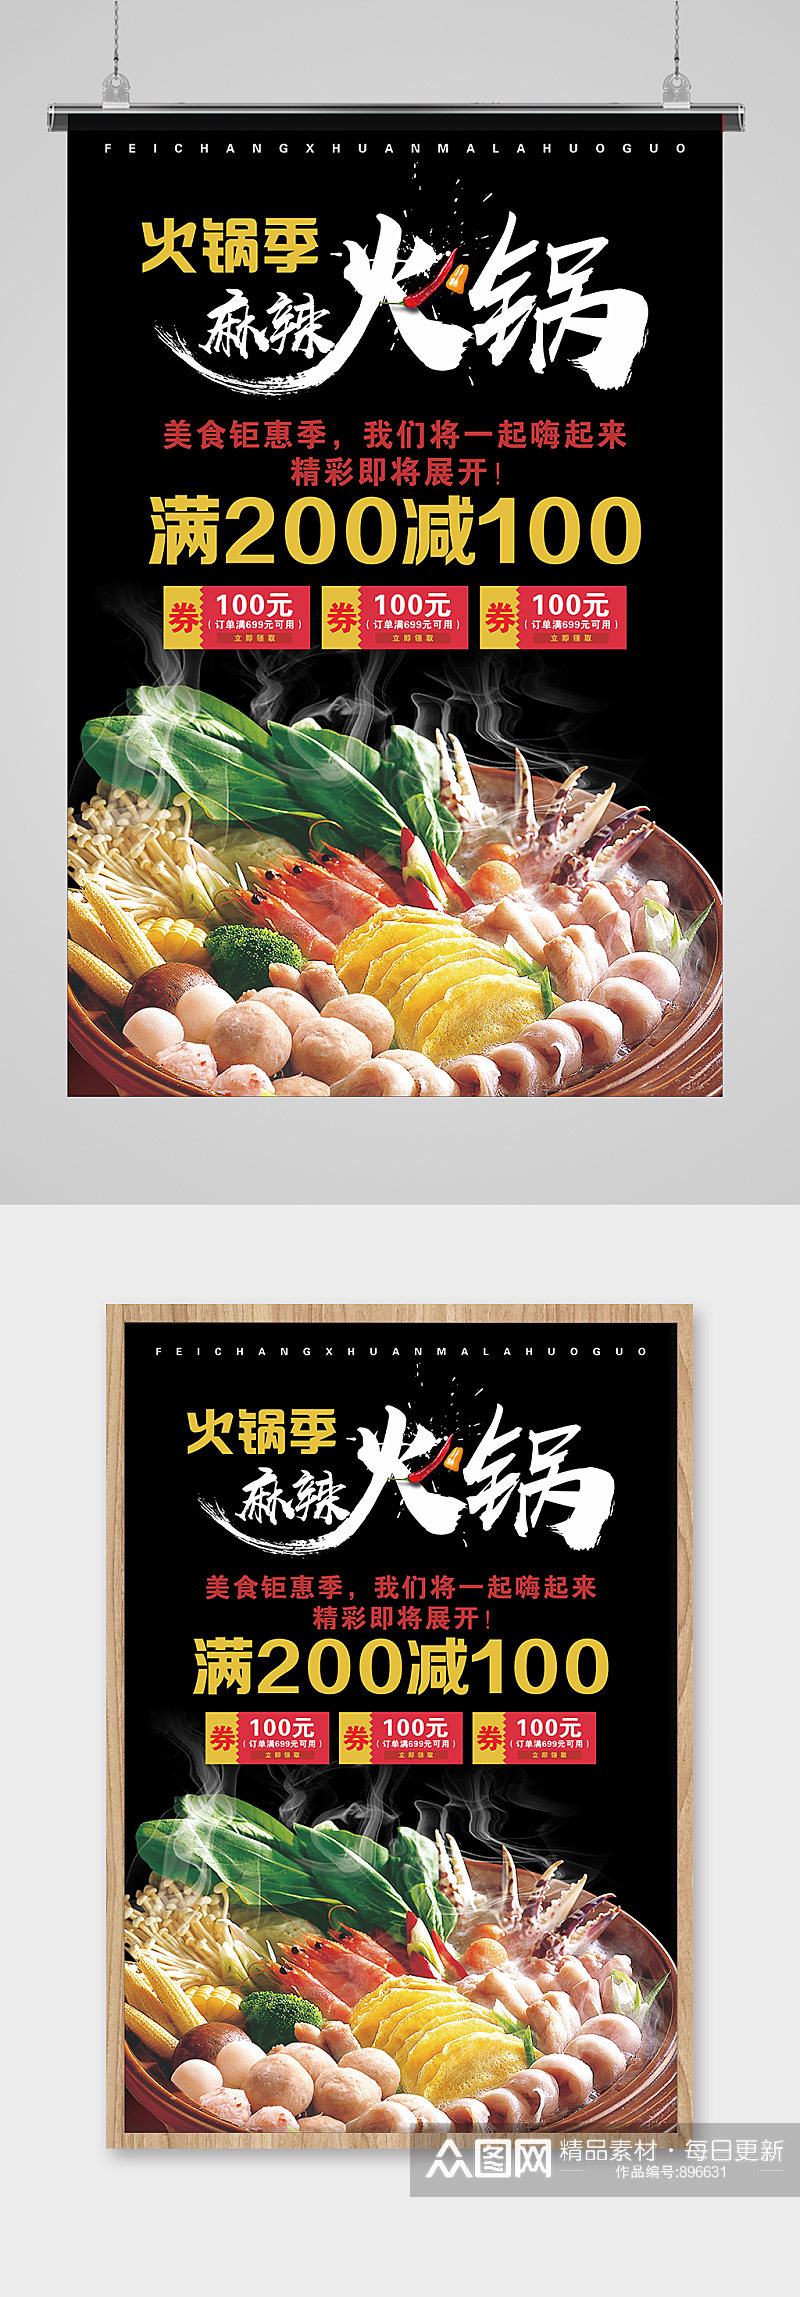 火锅文化宣传海报设计素材